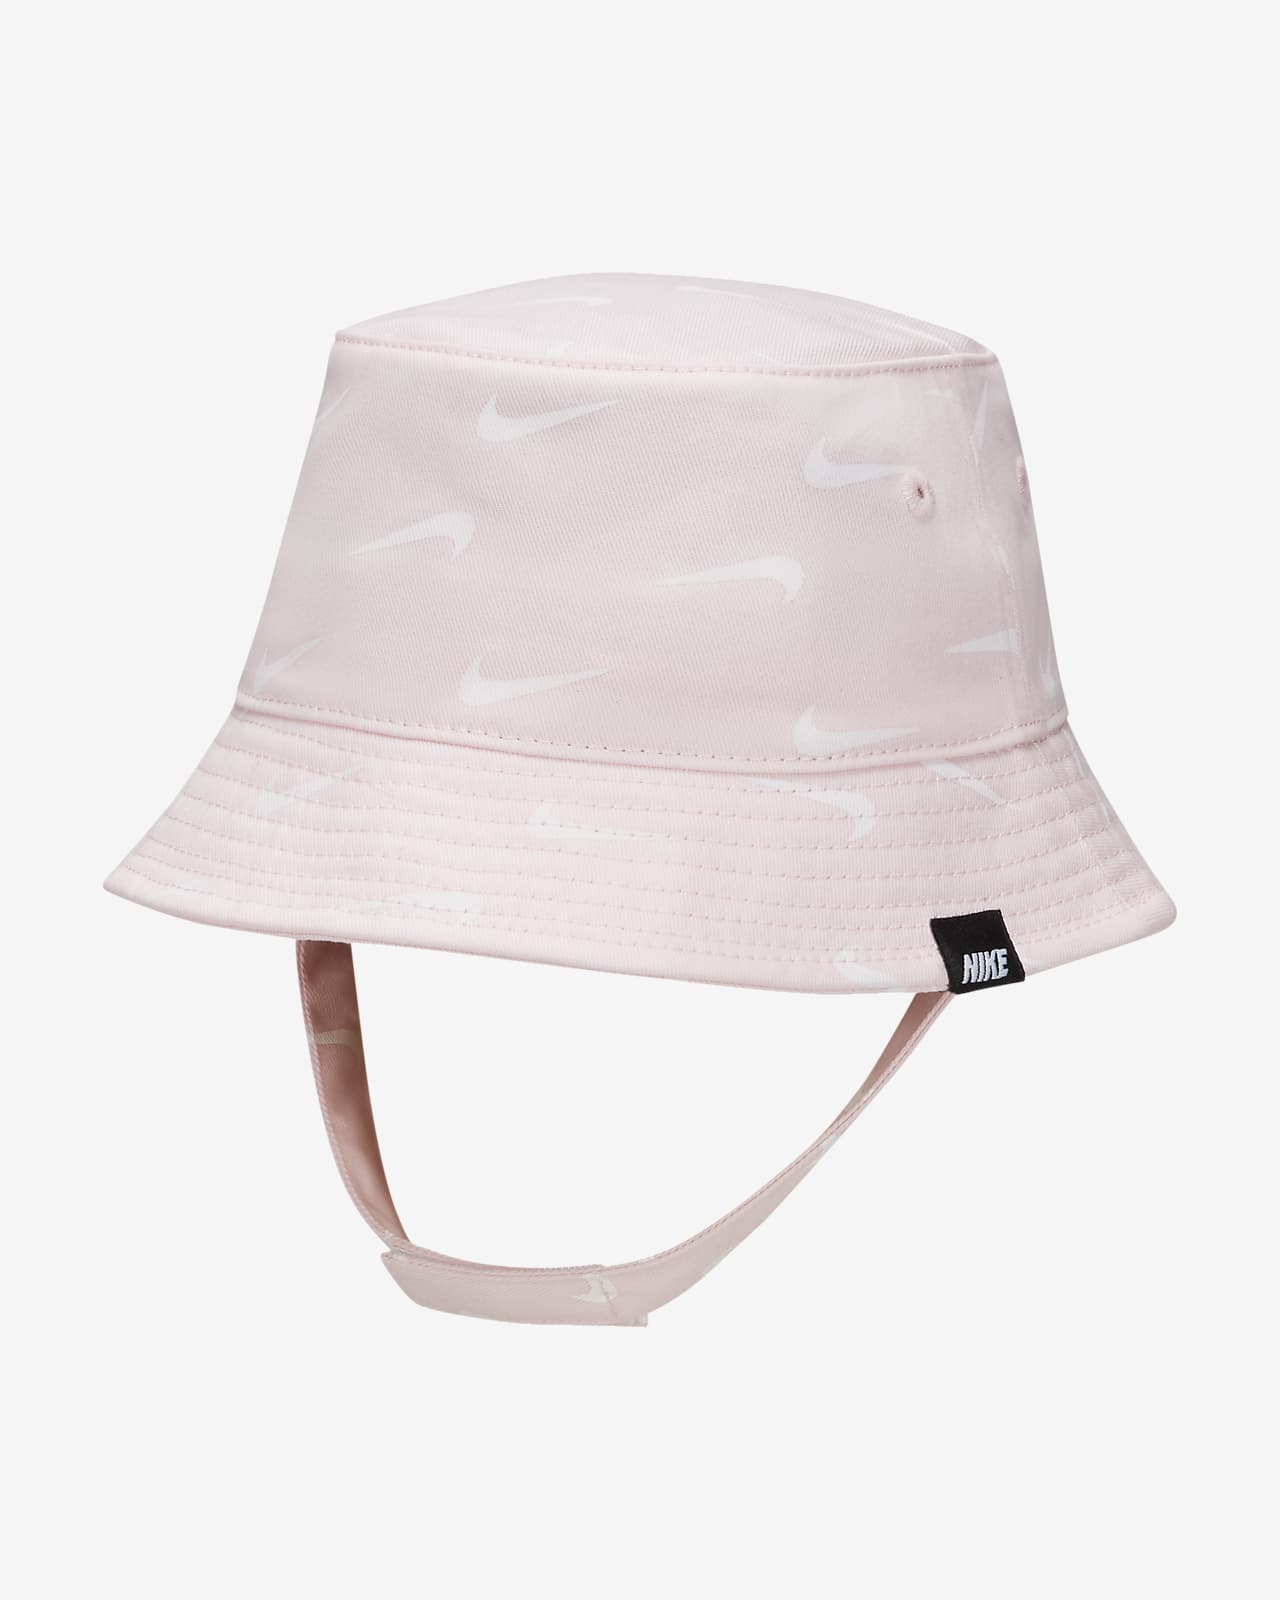 Nike Toddler Bucket Hat